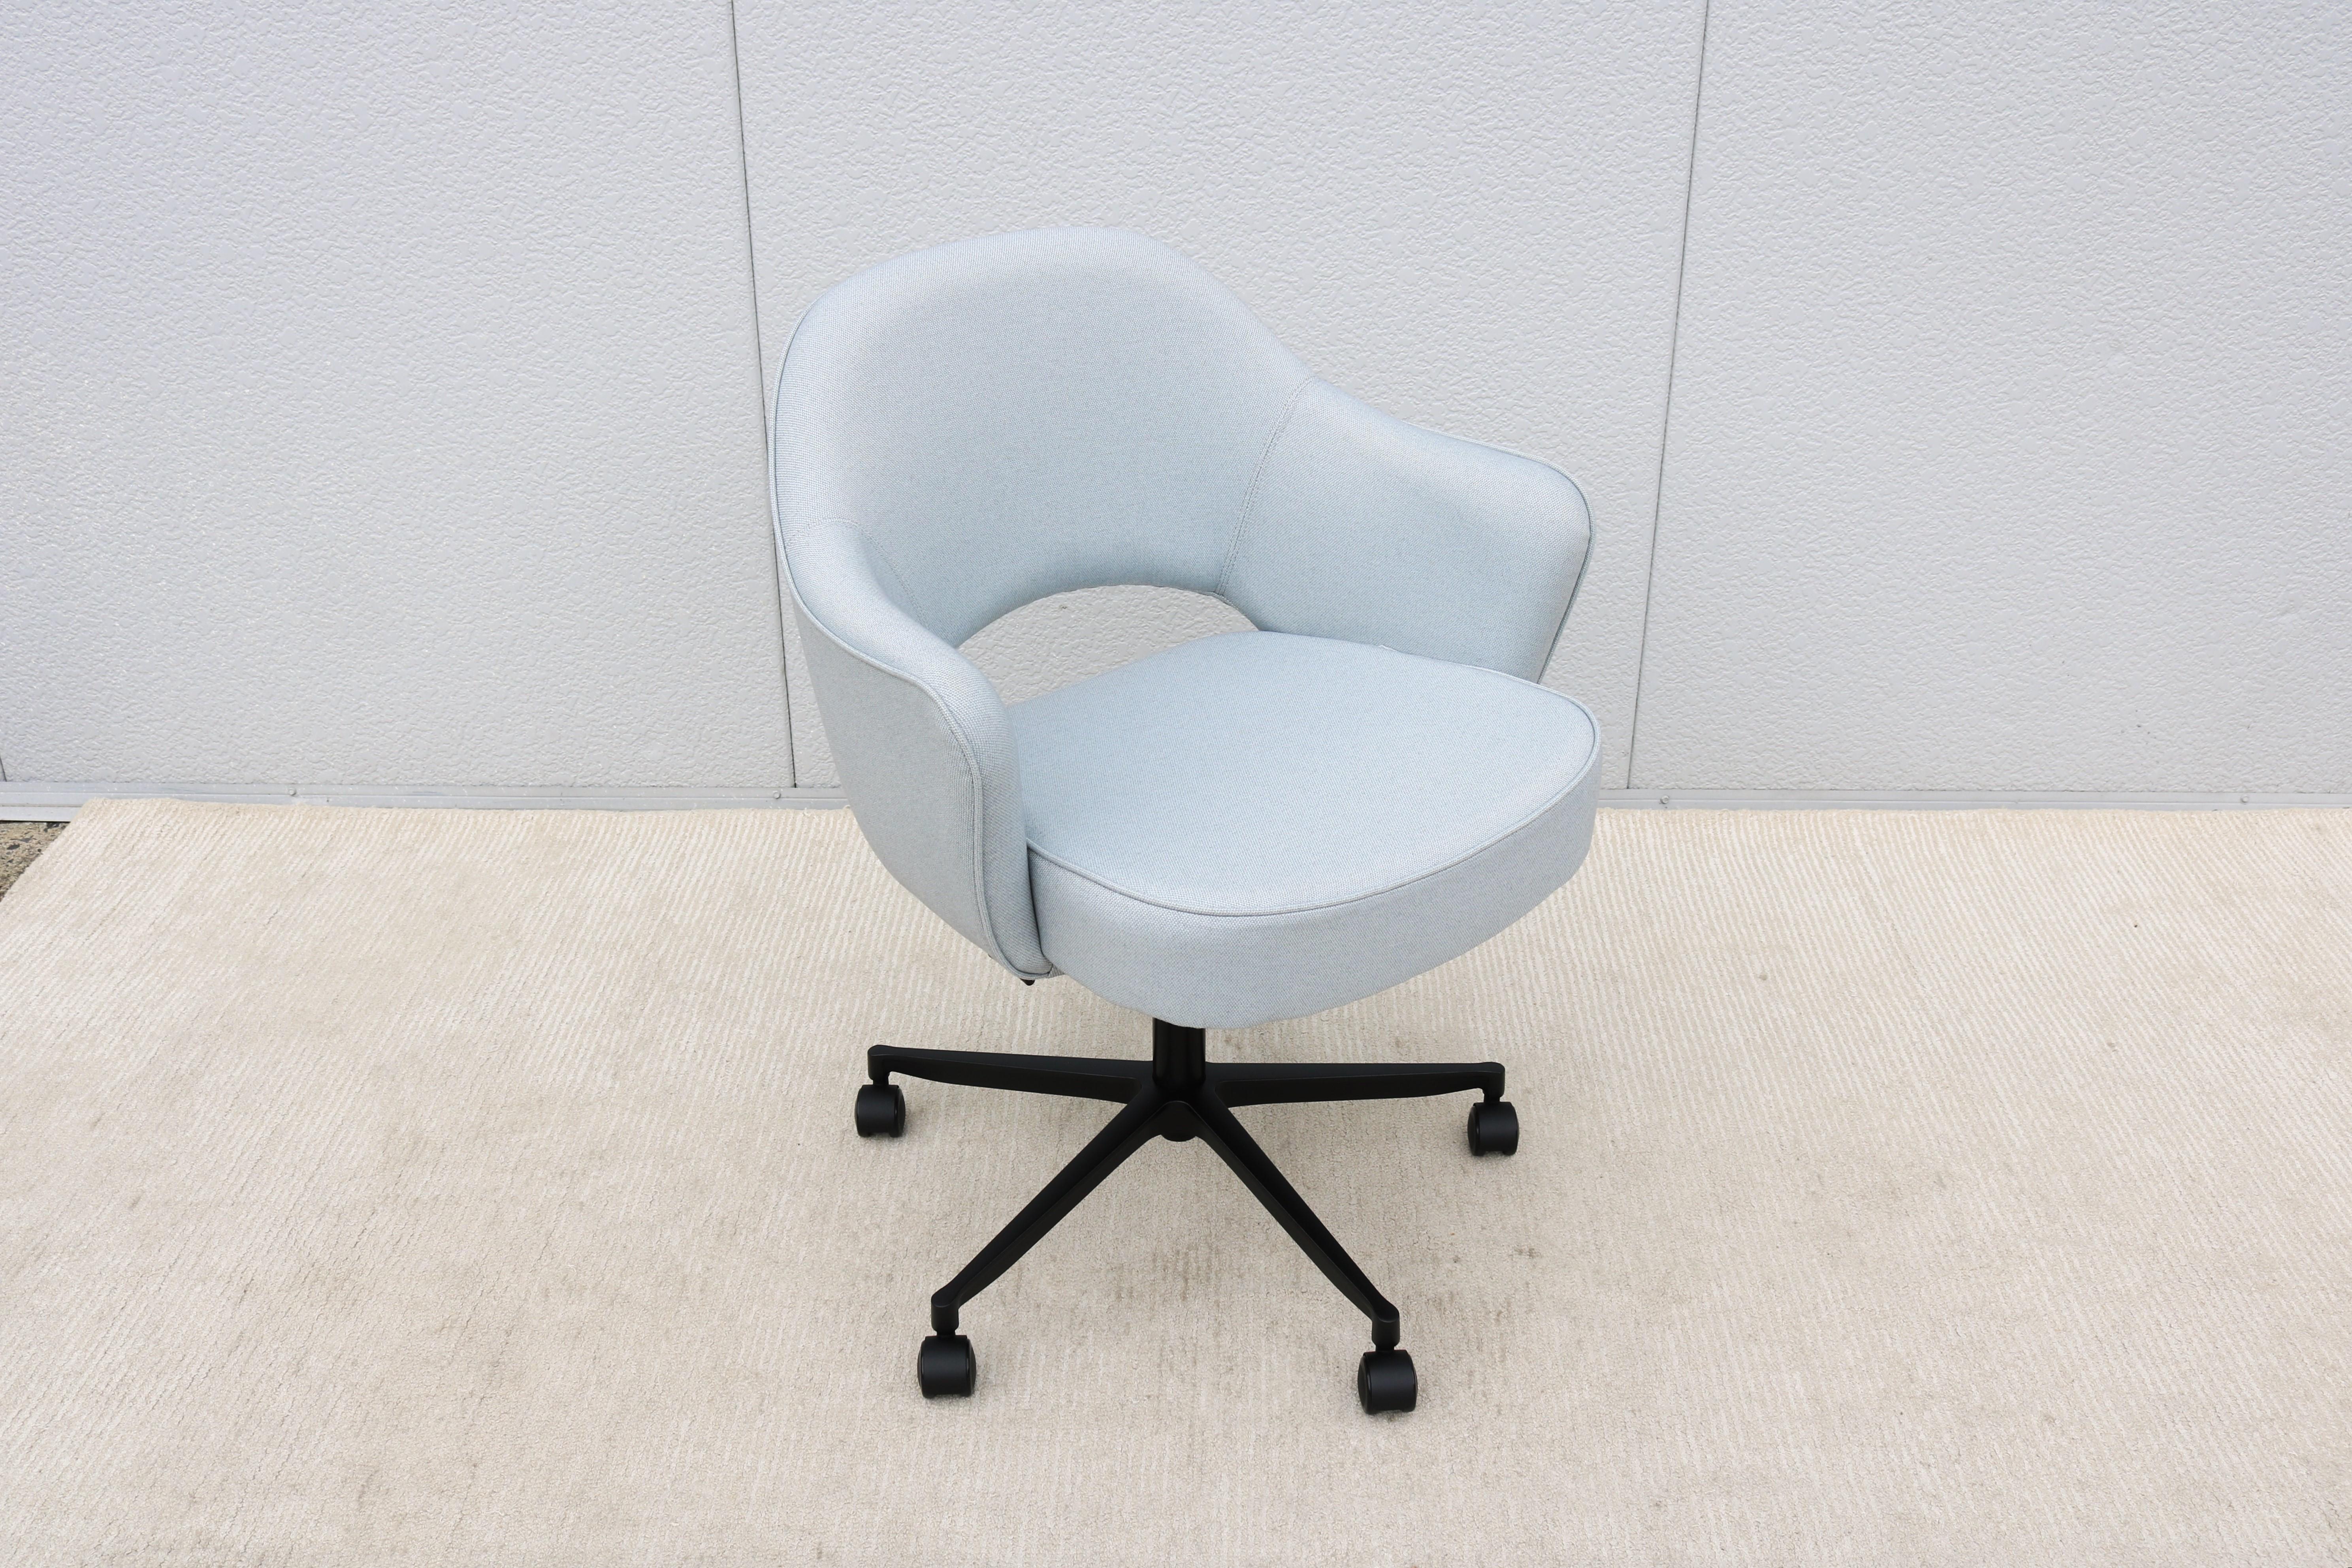 Ce superbe fauteuil de direction Saarinen, authentiquement moderne et datant du milieu du siècle, est doté d'une base pivotante réglable en hauteur et d'une inclinaison ajustée en fonction du poids.
L'un des designs les plus populaires de Knoll qui